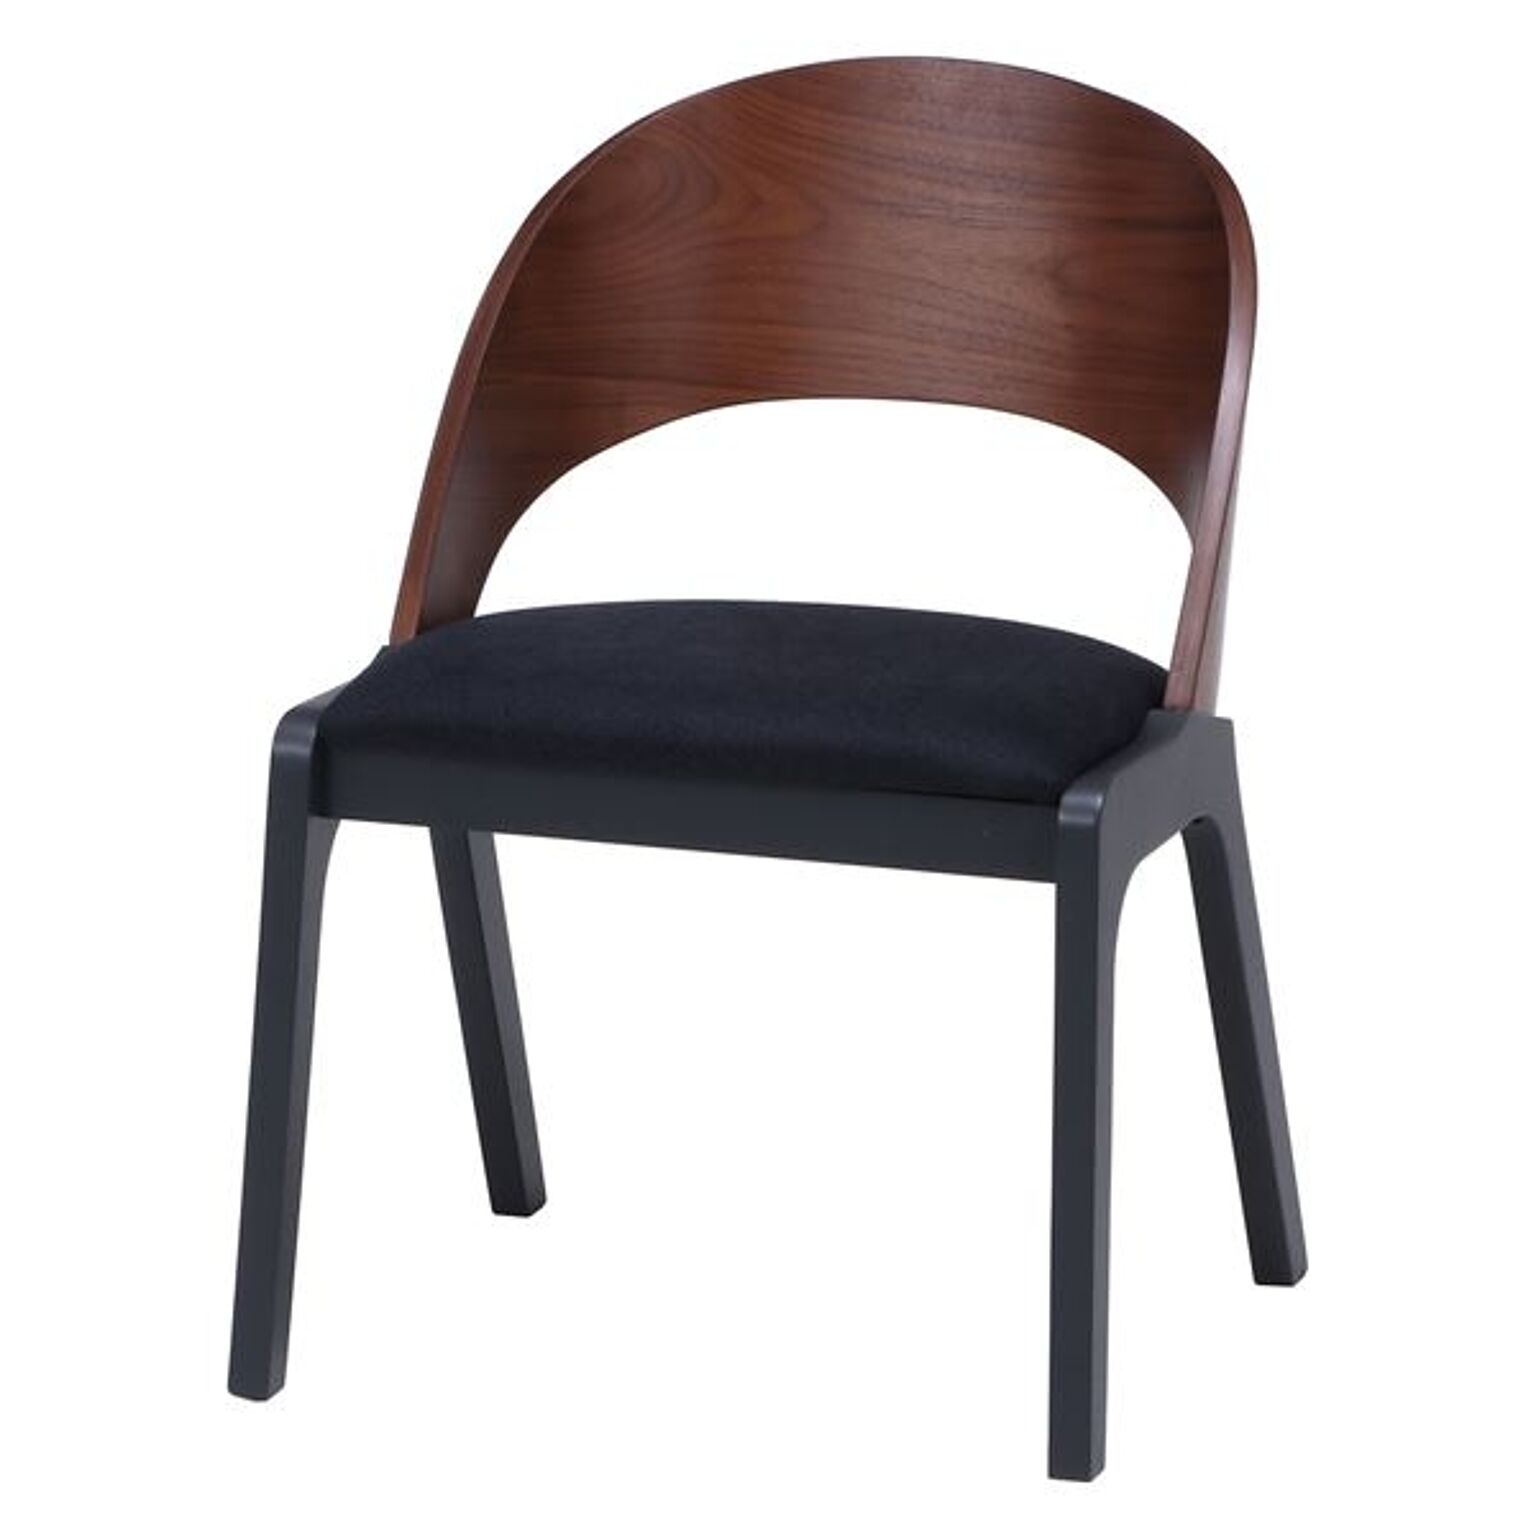 ダイニングチェア 食卓椅子 幅51×奥行52.5×高さ72cm ブラウン×グレー 2個セット 木製 リビング 在宅ワーク【代引不可】